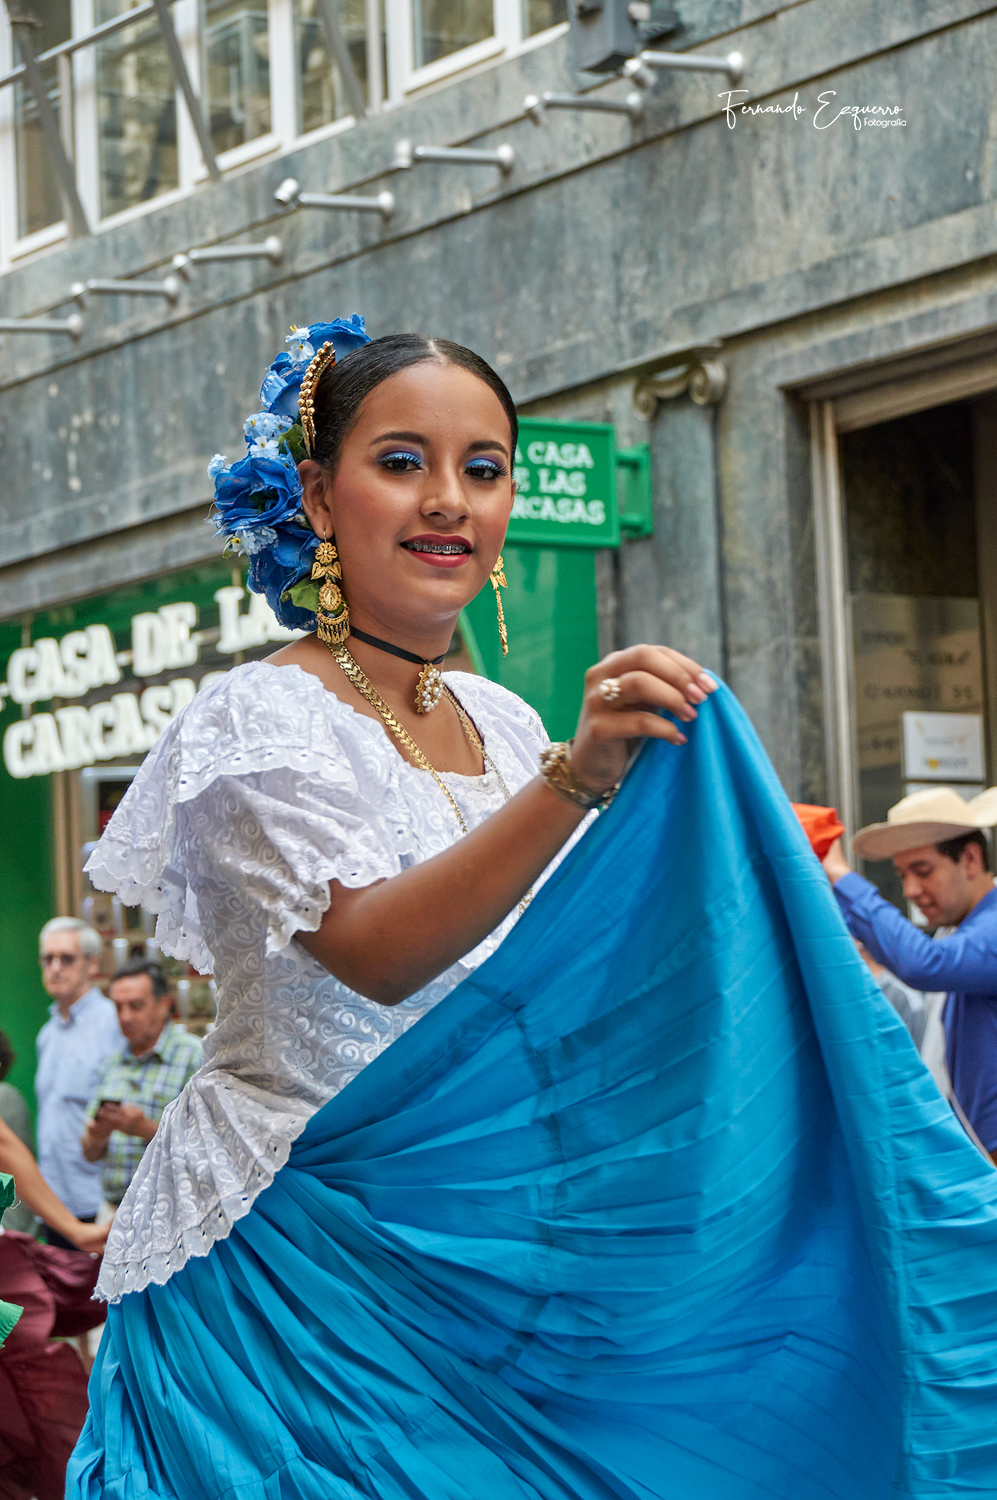 XXVII Encuentro Internacional de Folklore "Ciudad de Zaragoza" (